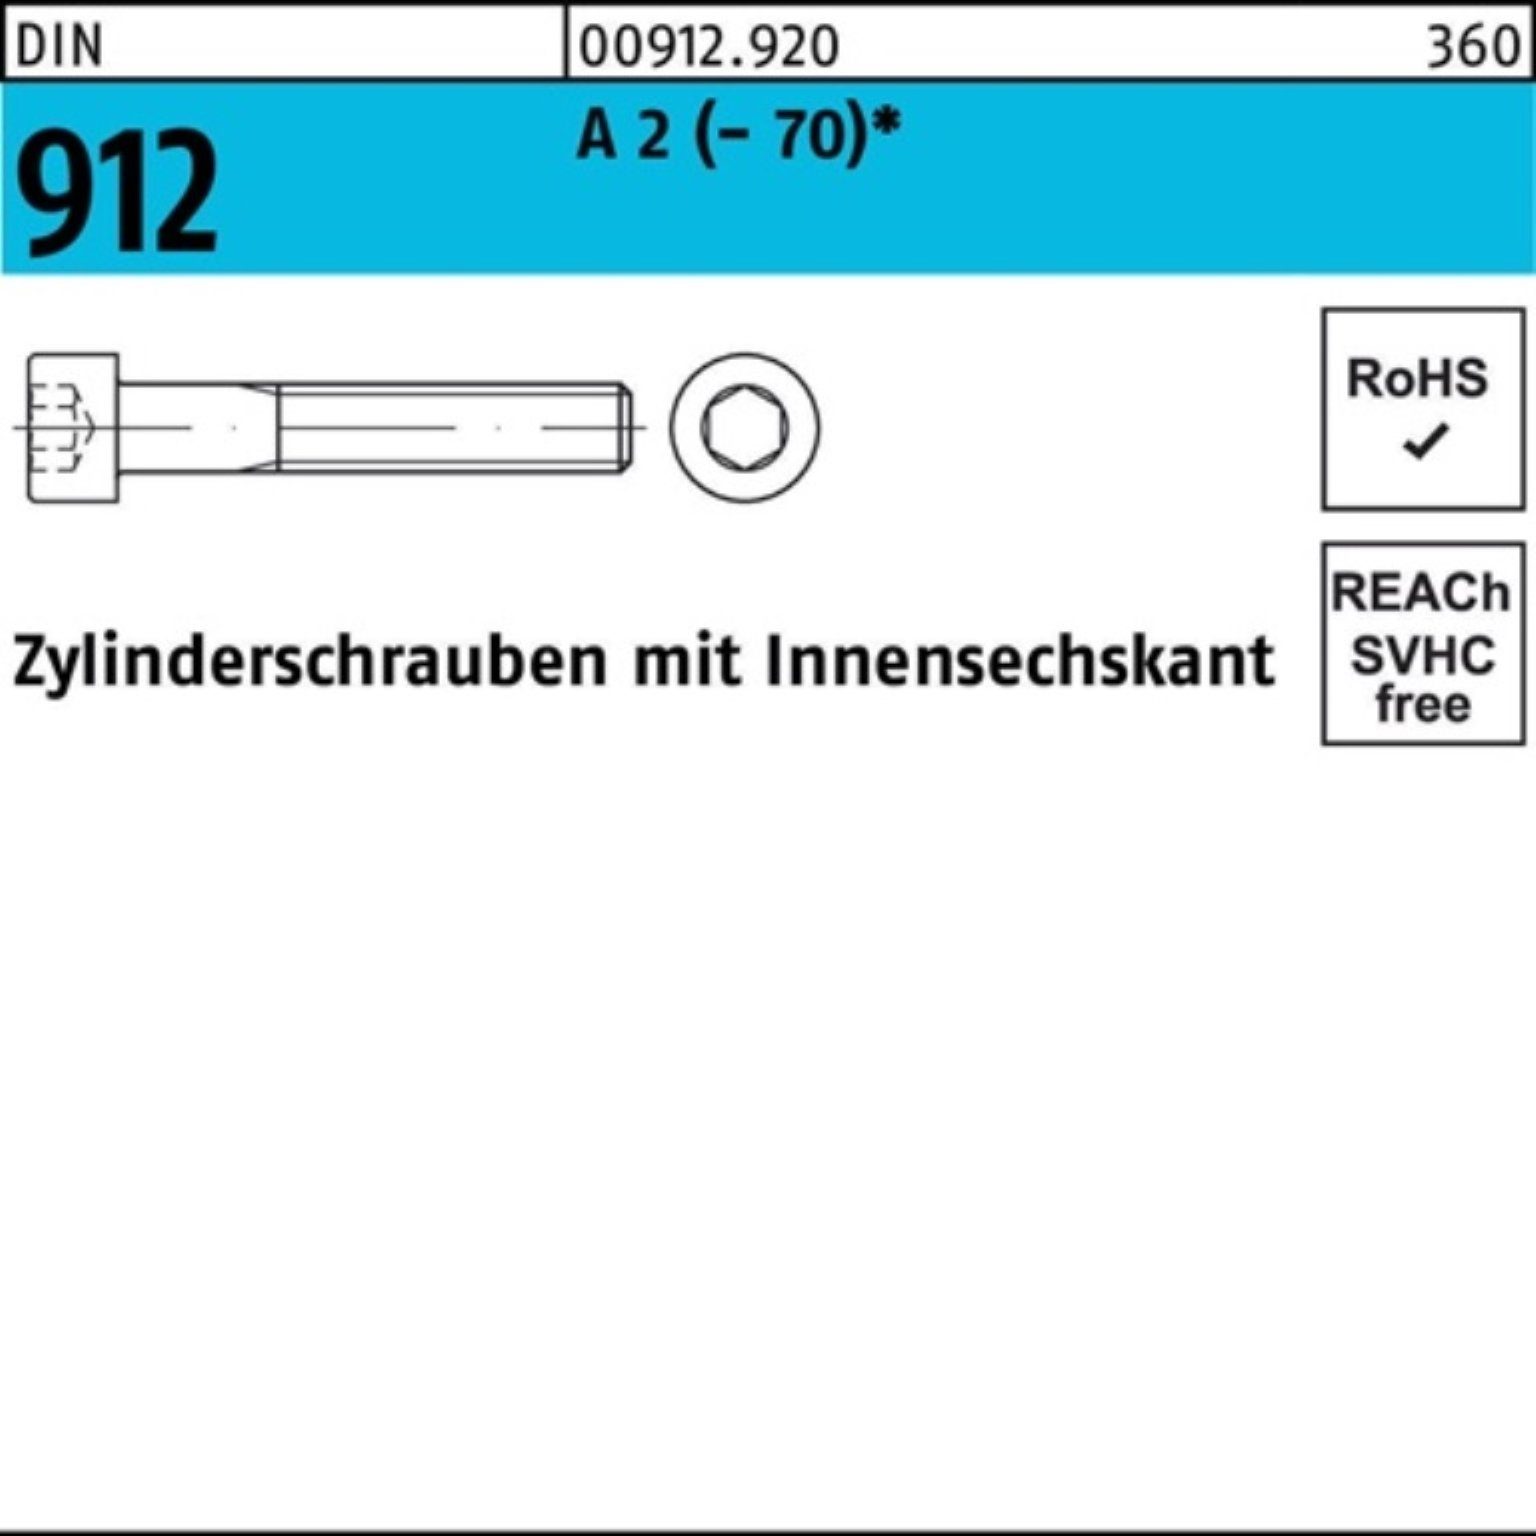 A S Zylinderschraube 2 100 (70) Pack Zylinderschraube 55 Innen-6kt 100er M10x Reyher 912 DIN